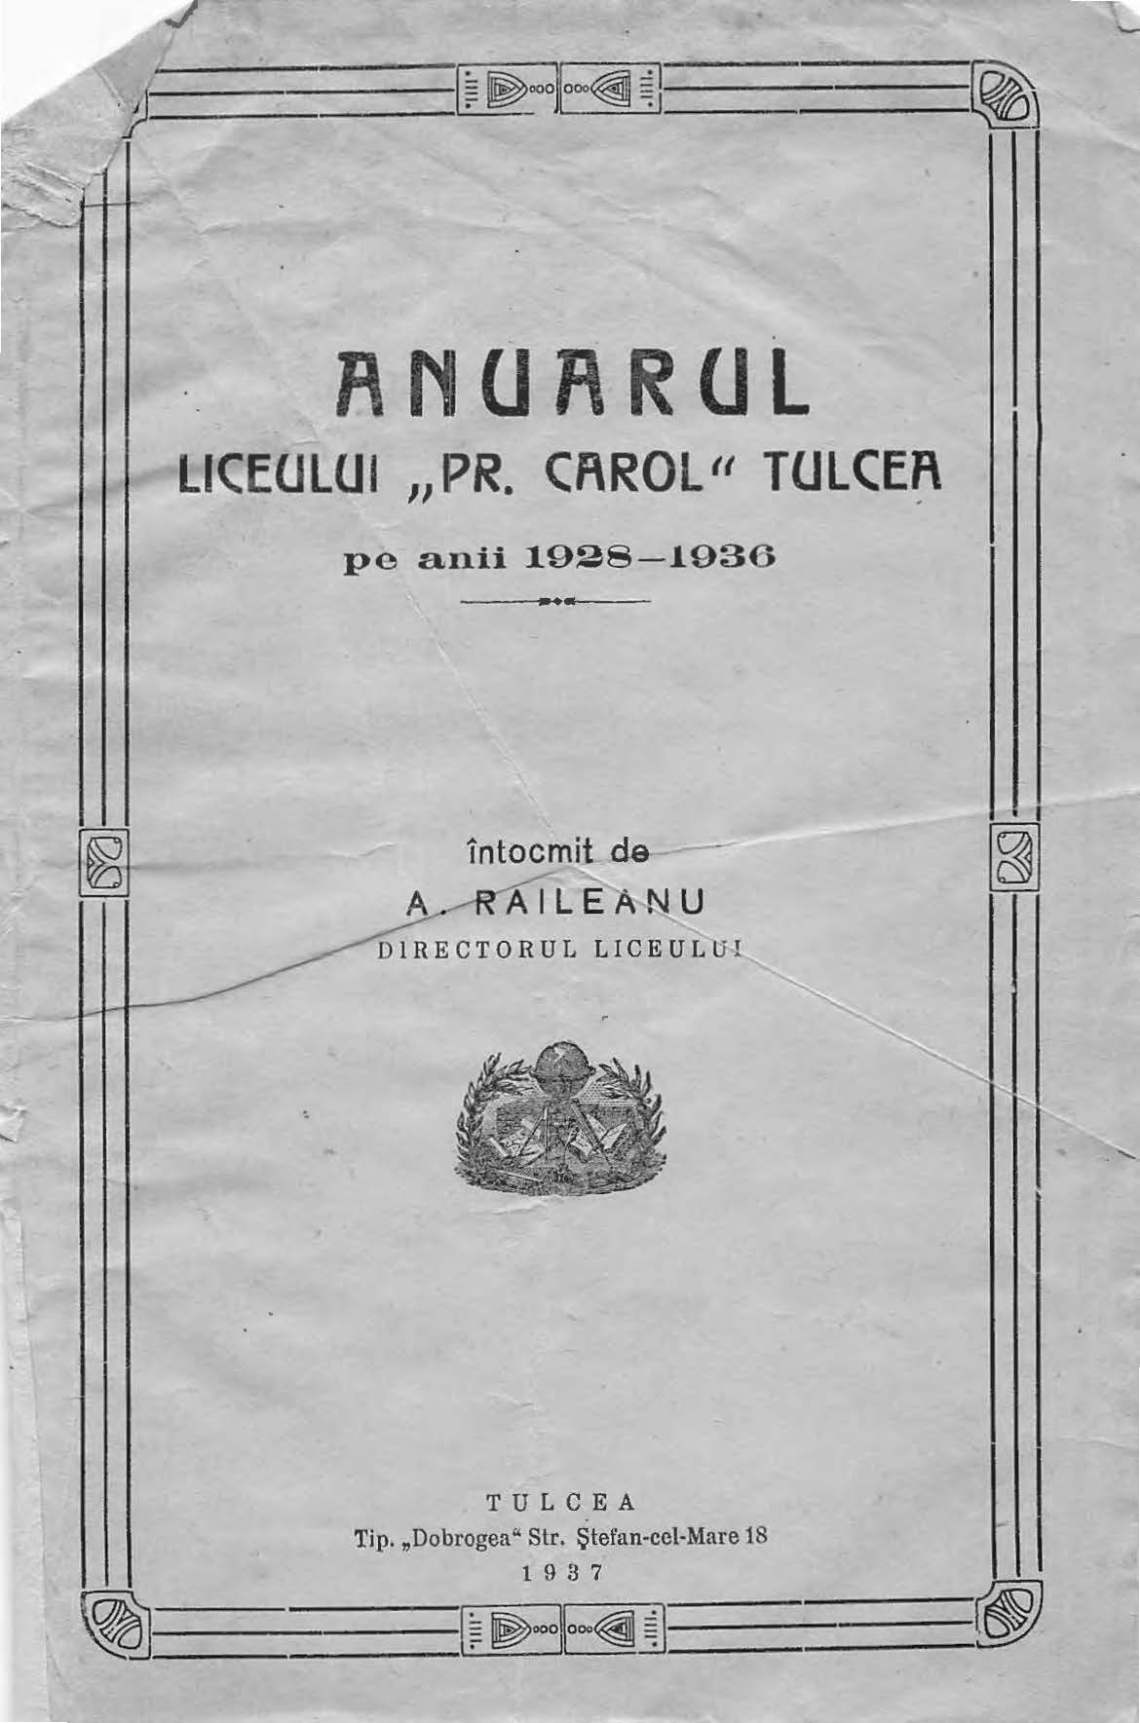 coperta anuarul liceului spiru haret tulcea_192-1936